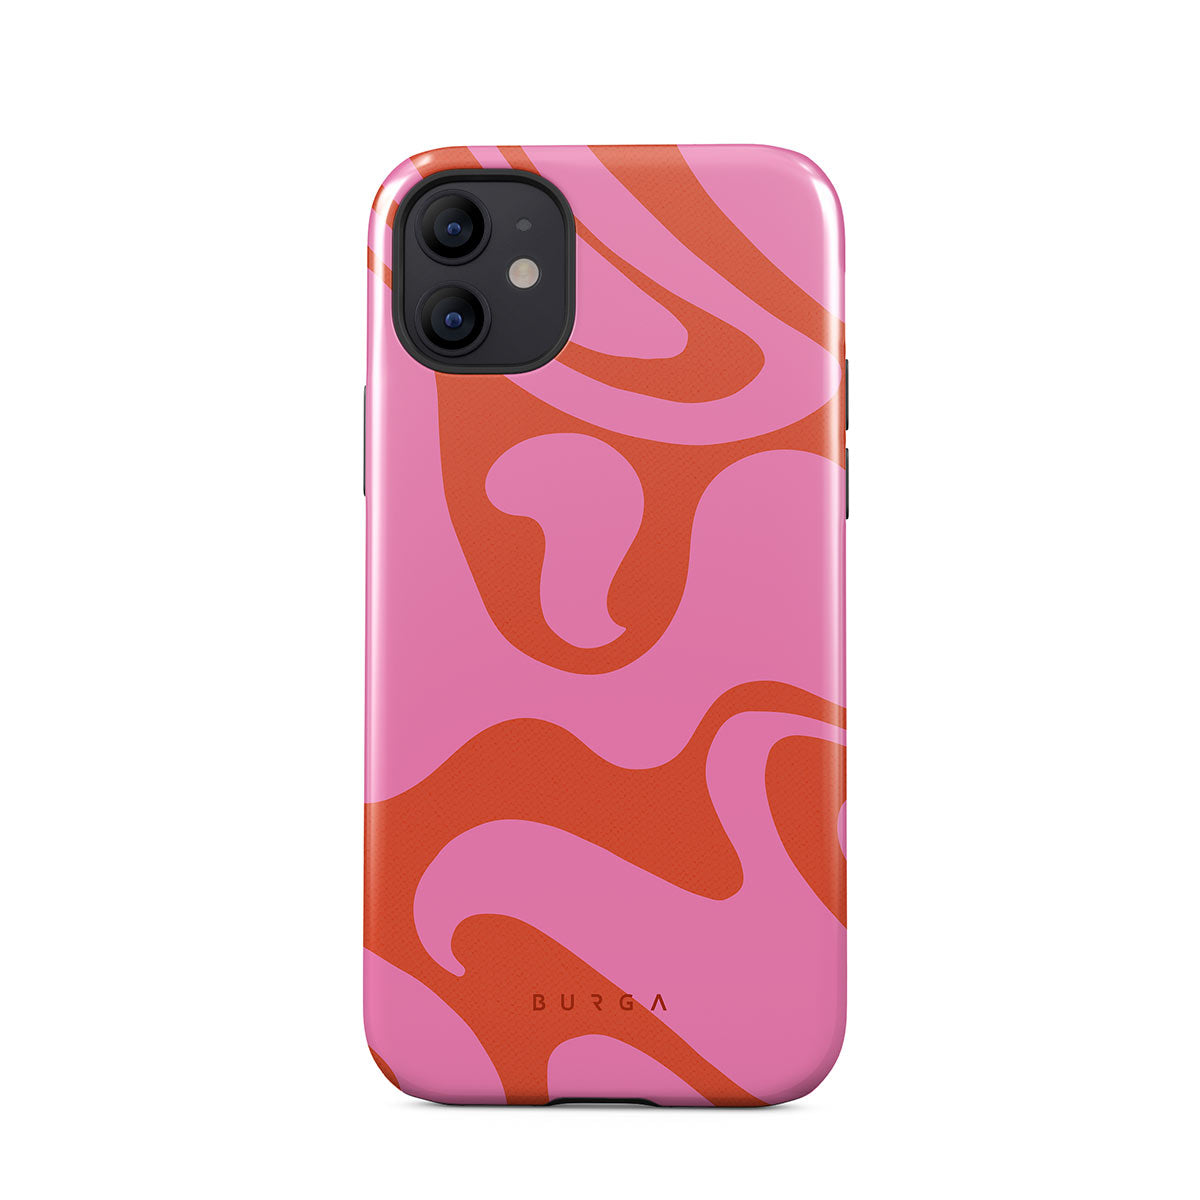 iPhone 12 Mini Cases | Stylish yet Super Protective - BURGA